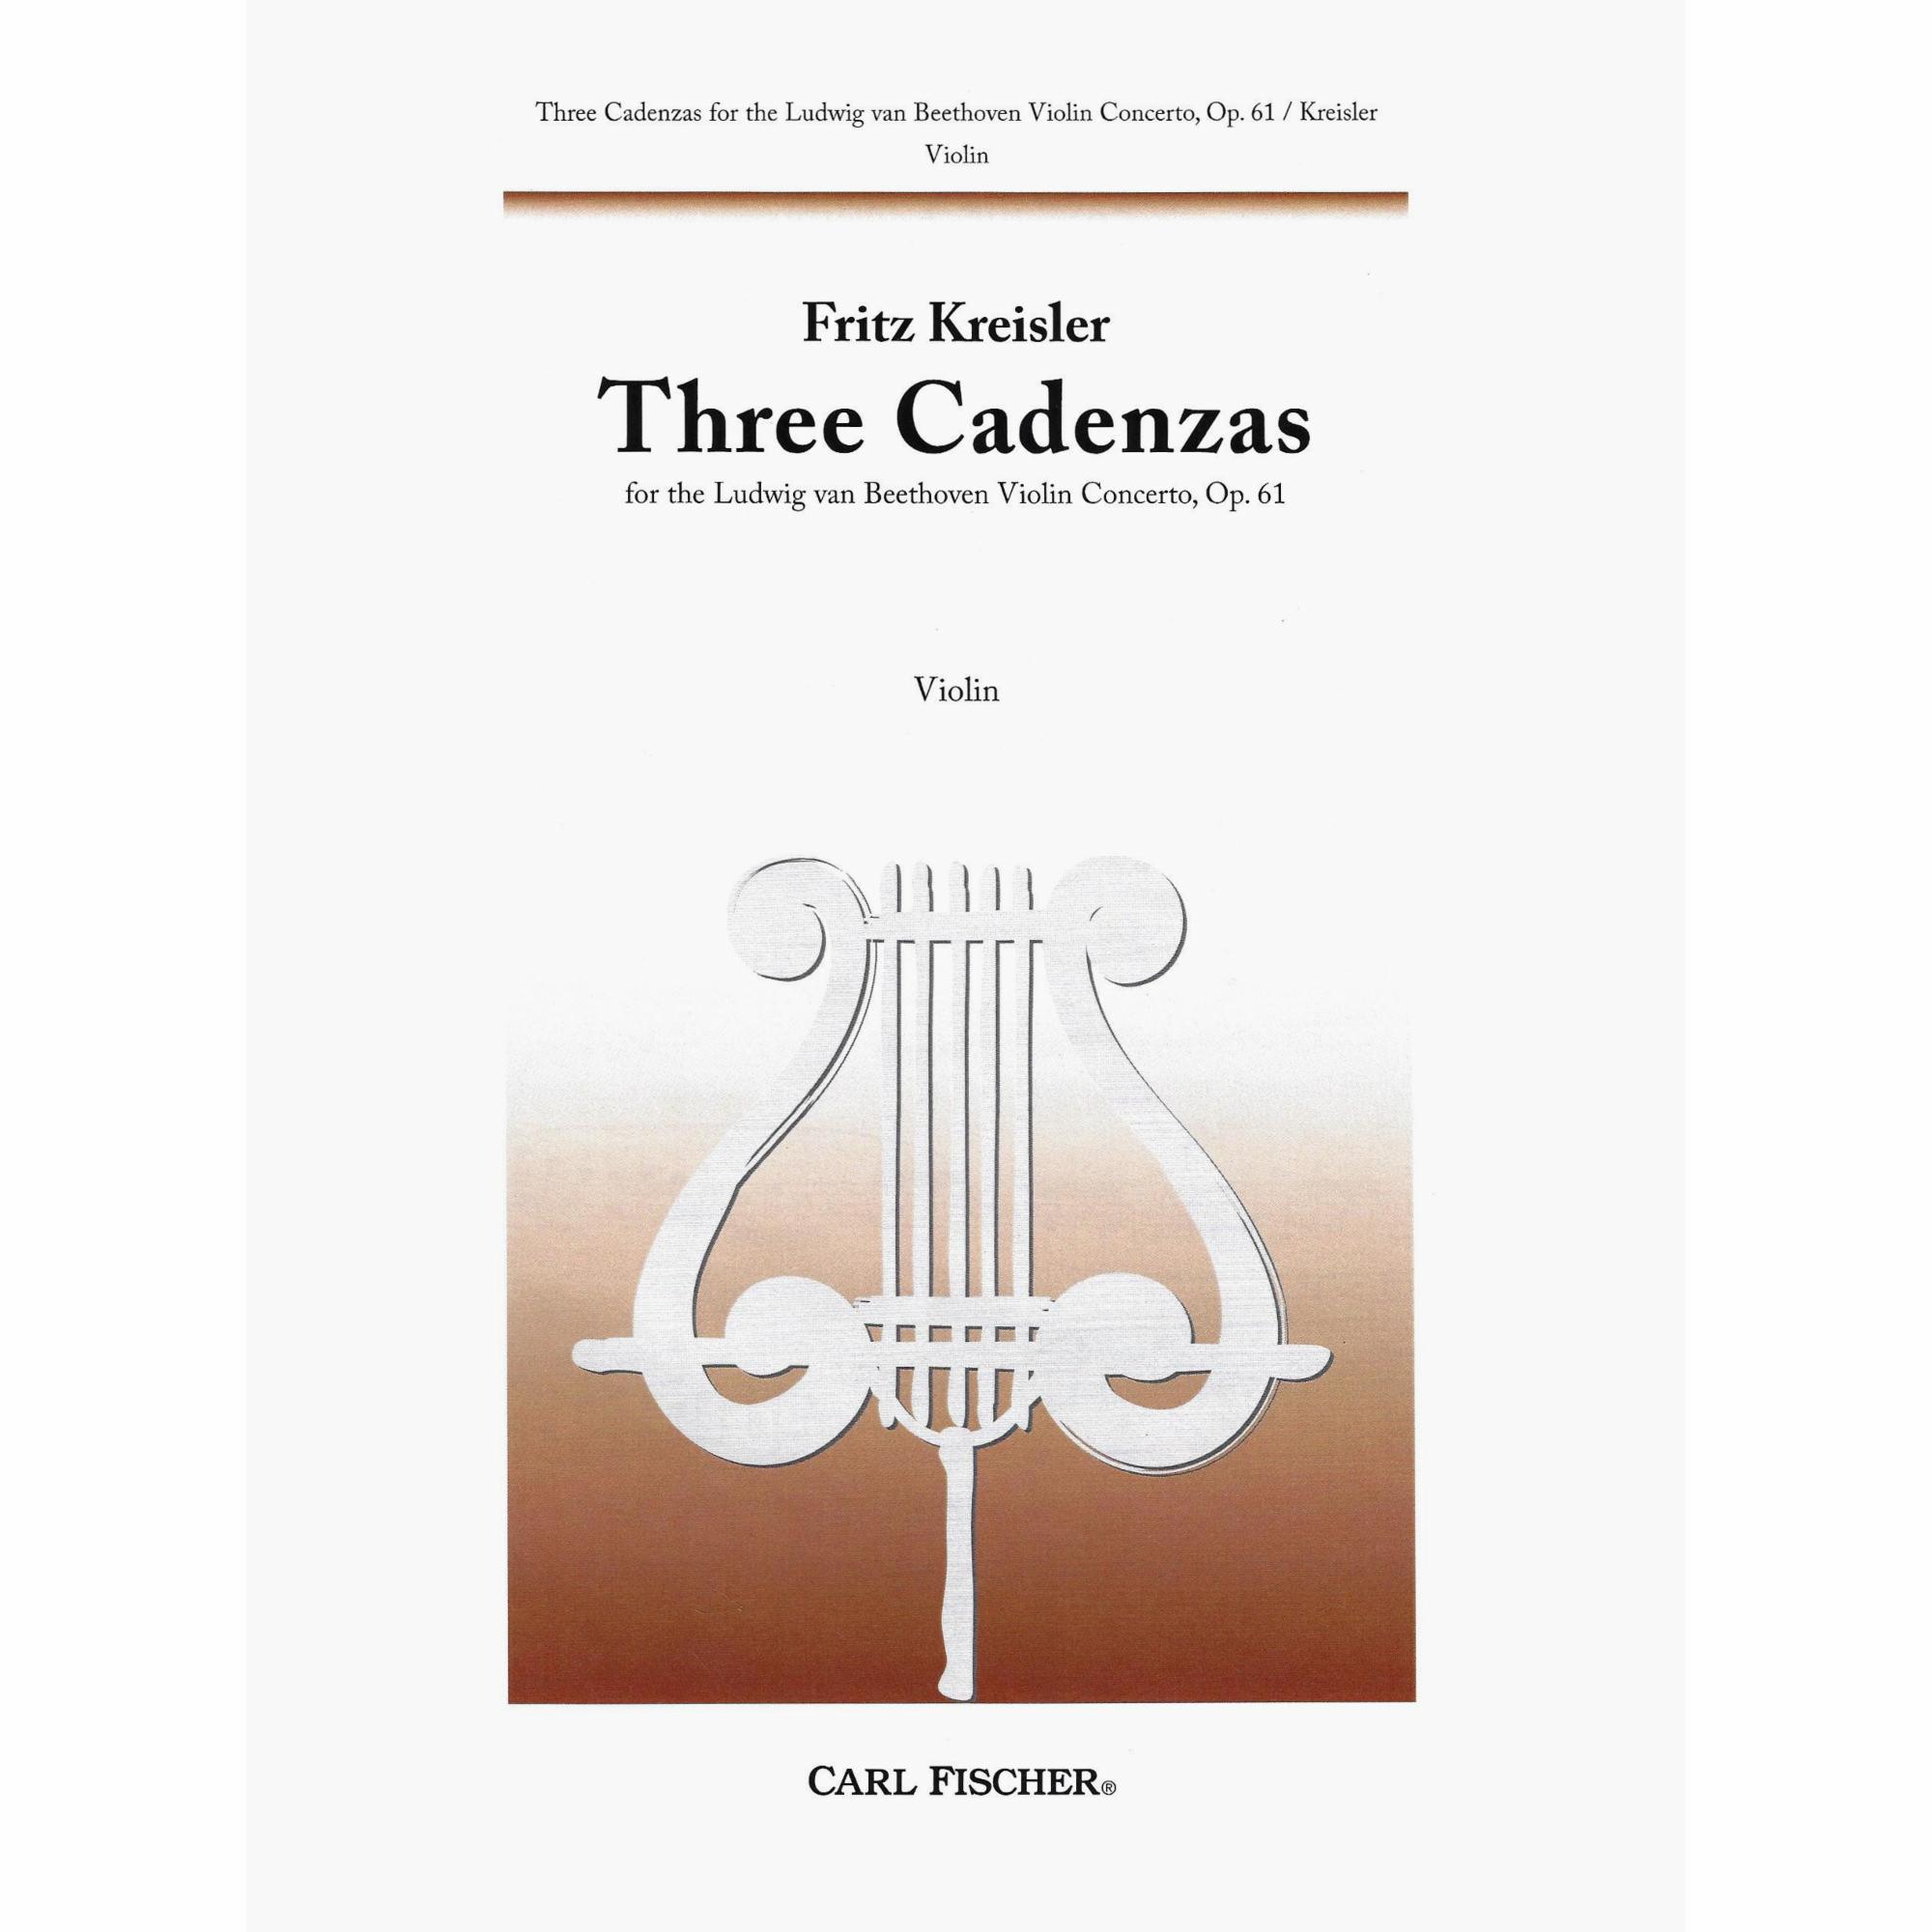 Kreisler -- Three Cadenzas for Beethoven's Violin Concerto